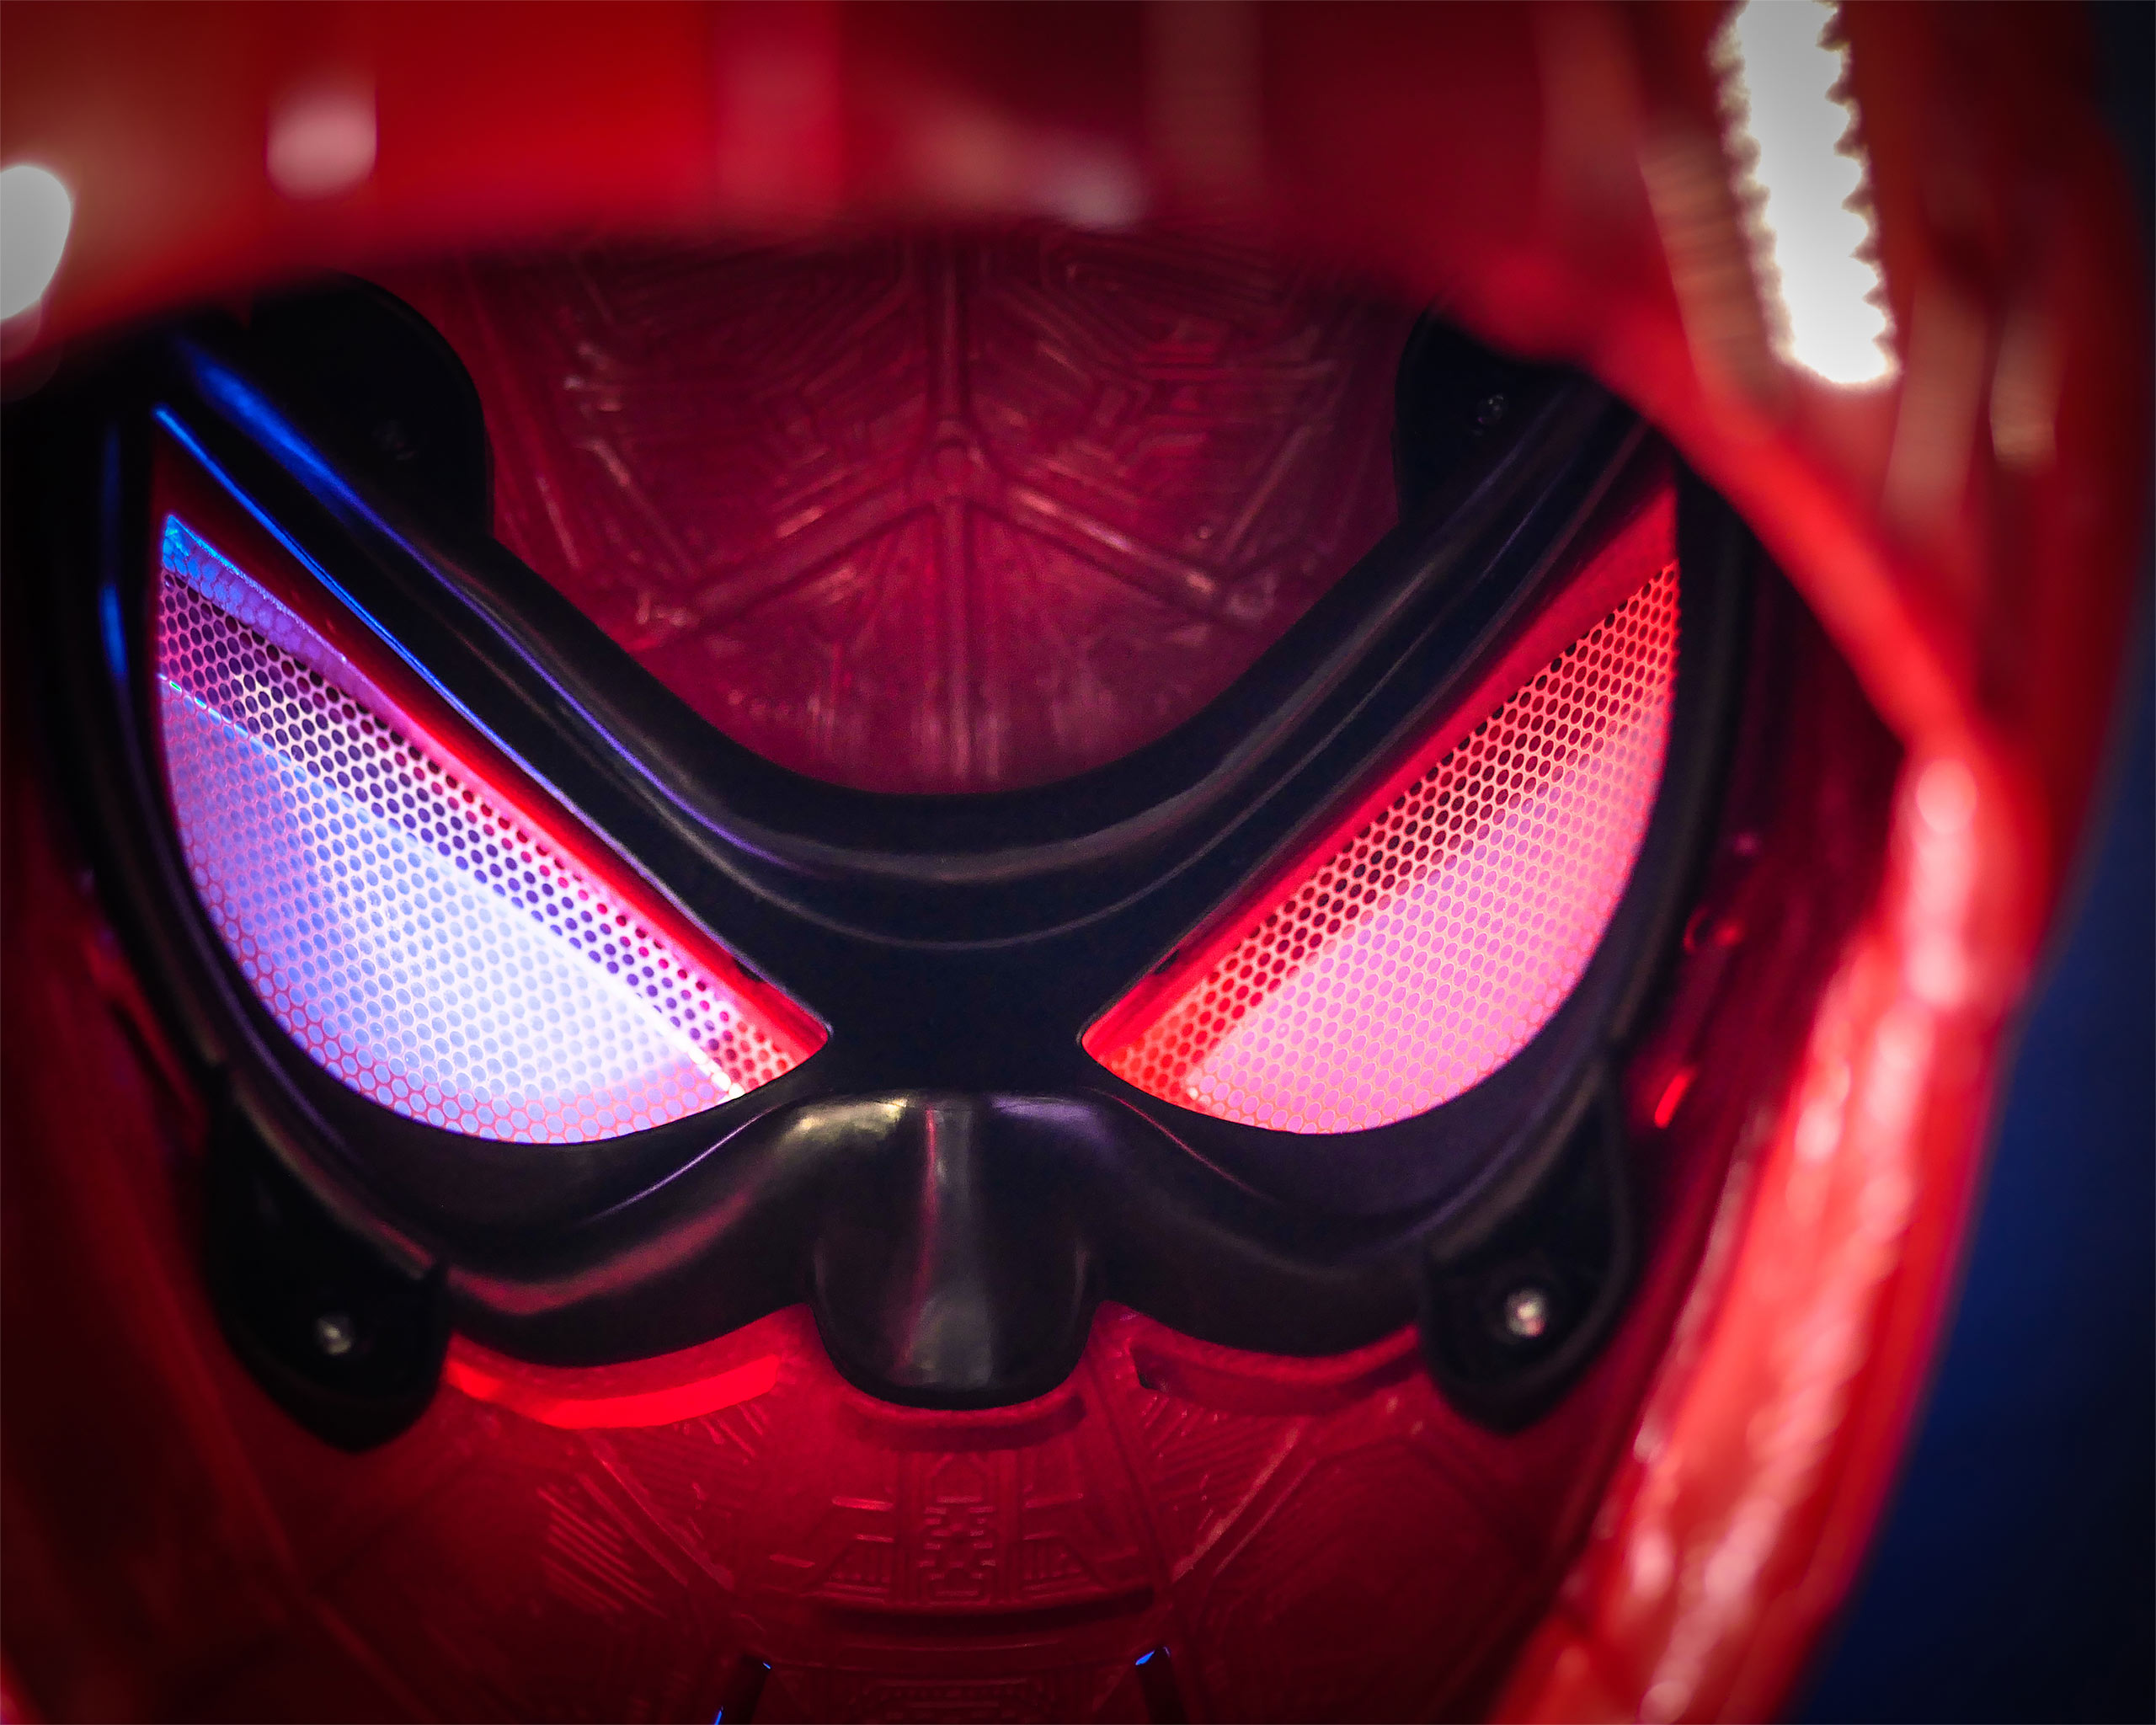 Spider-Man - Iron Spider Helm Replik mit Lichteffekten